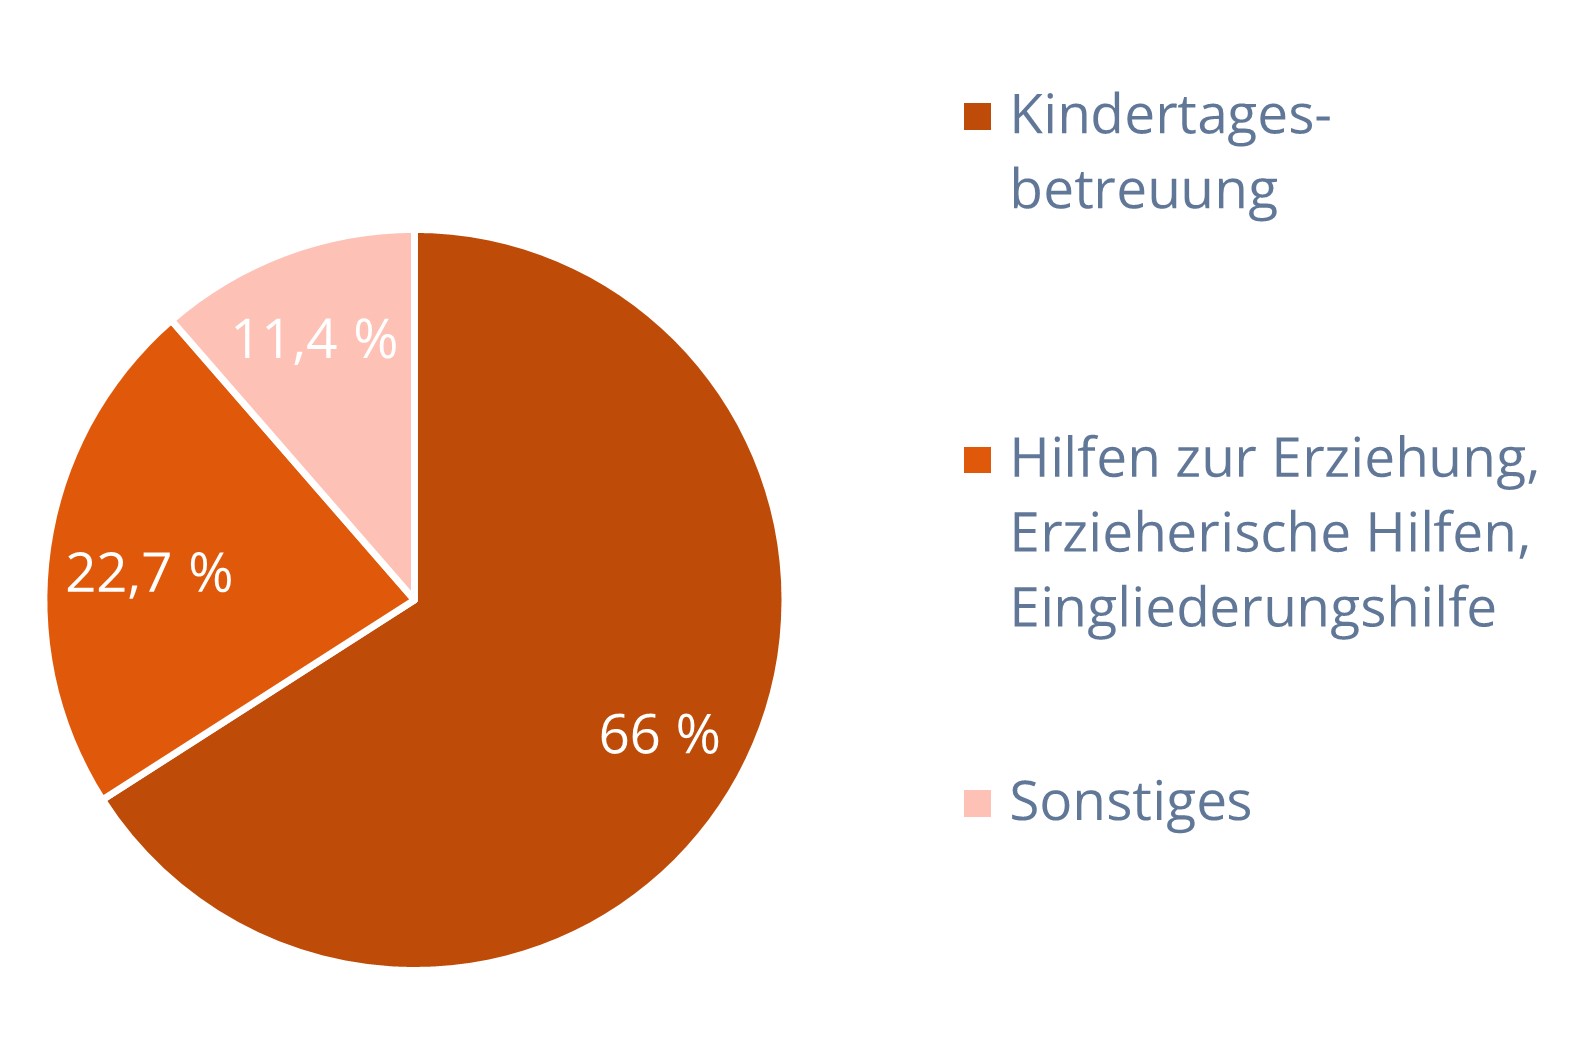 Kreisdiagramm zur Verteilung der Ausgaben in der Kinder- und Jugendhilfe in Mrd. € (54,9; Angabe für das Jahr 2019), Gros fließt in die Kindertagesbetreuung (67 Prozent)